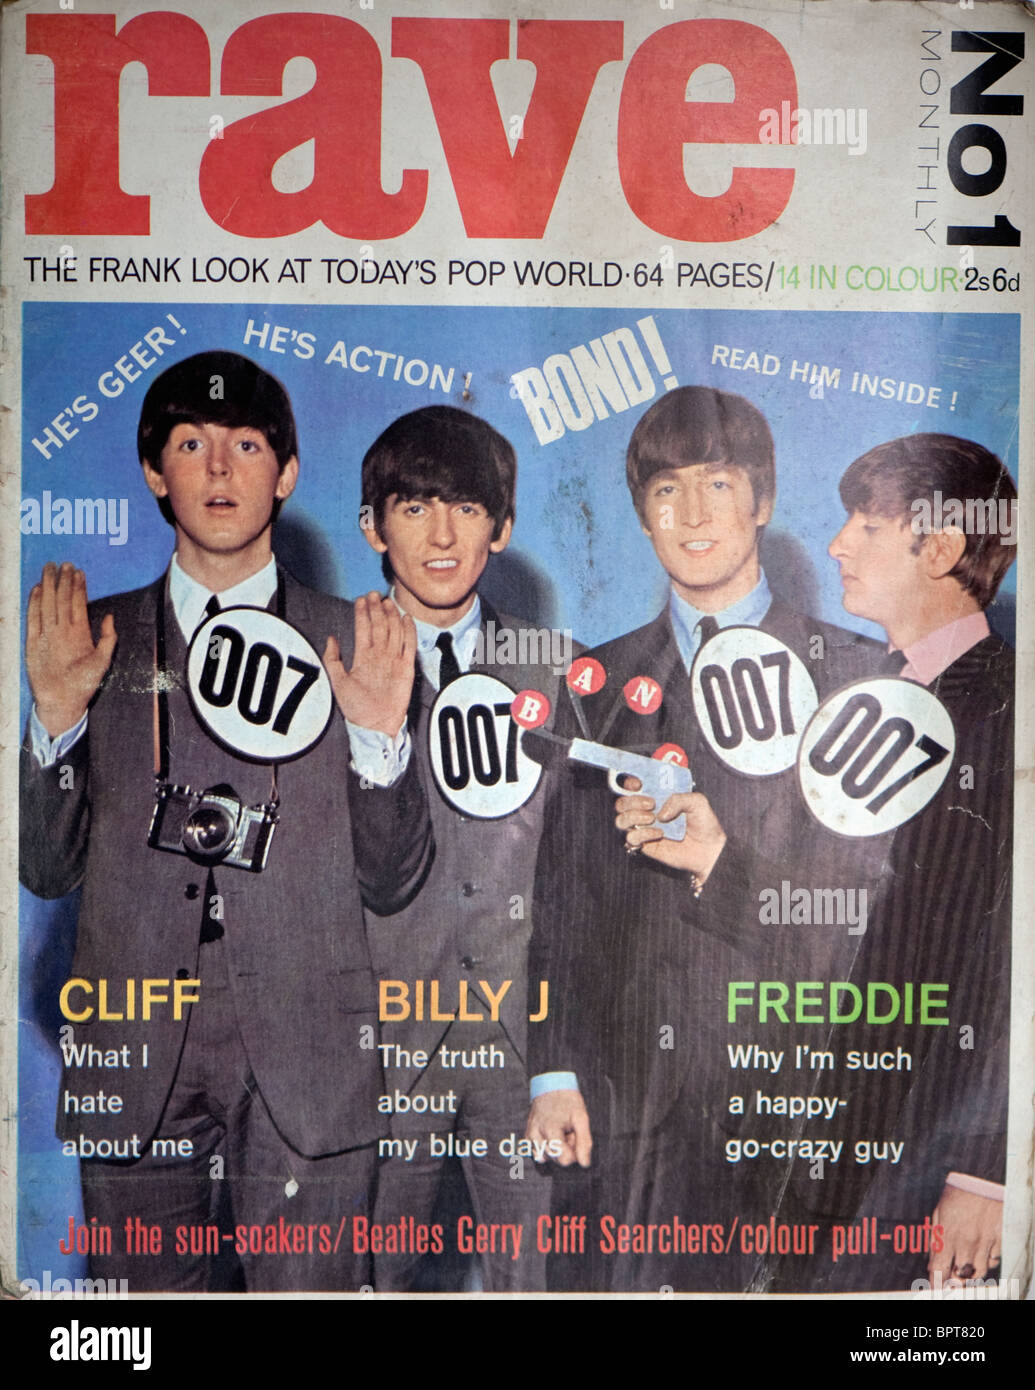 Couverture du magazine des années 60 montrant la Rave Beatles. Banque D'Images